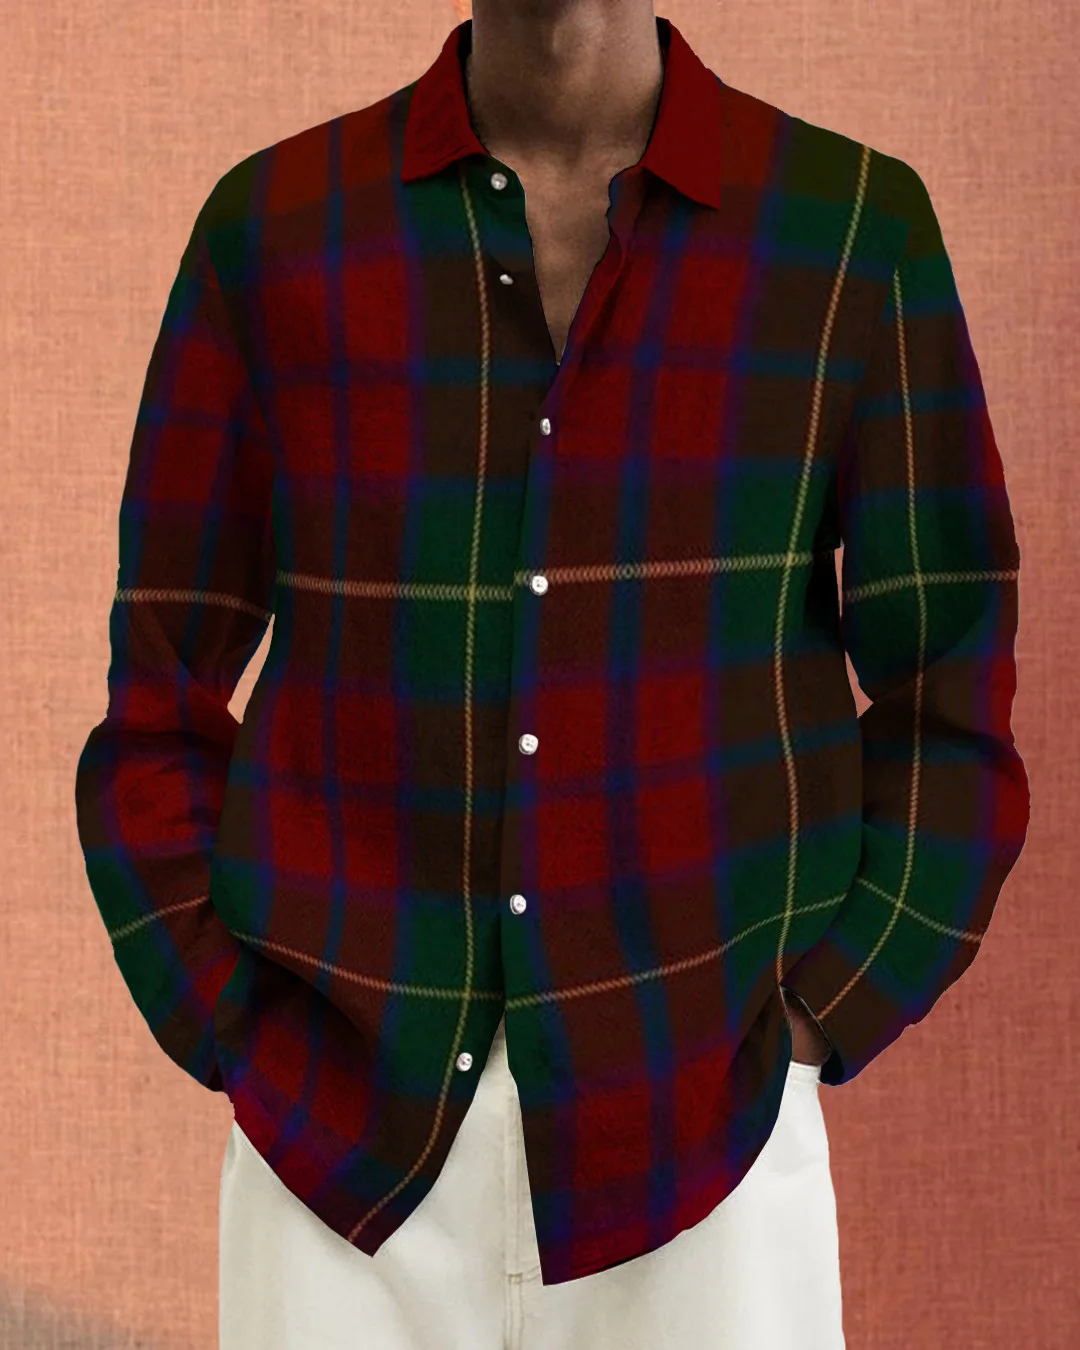 Men's cotton&linen long-sleeved fashion casual shirt  5ec1